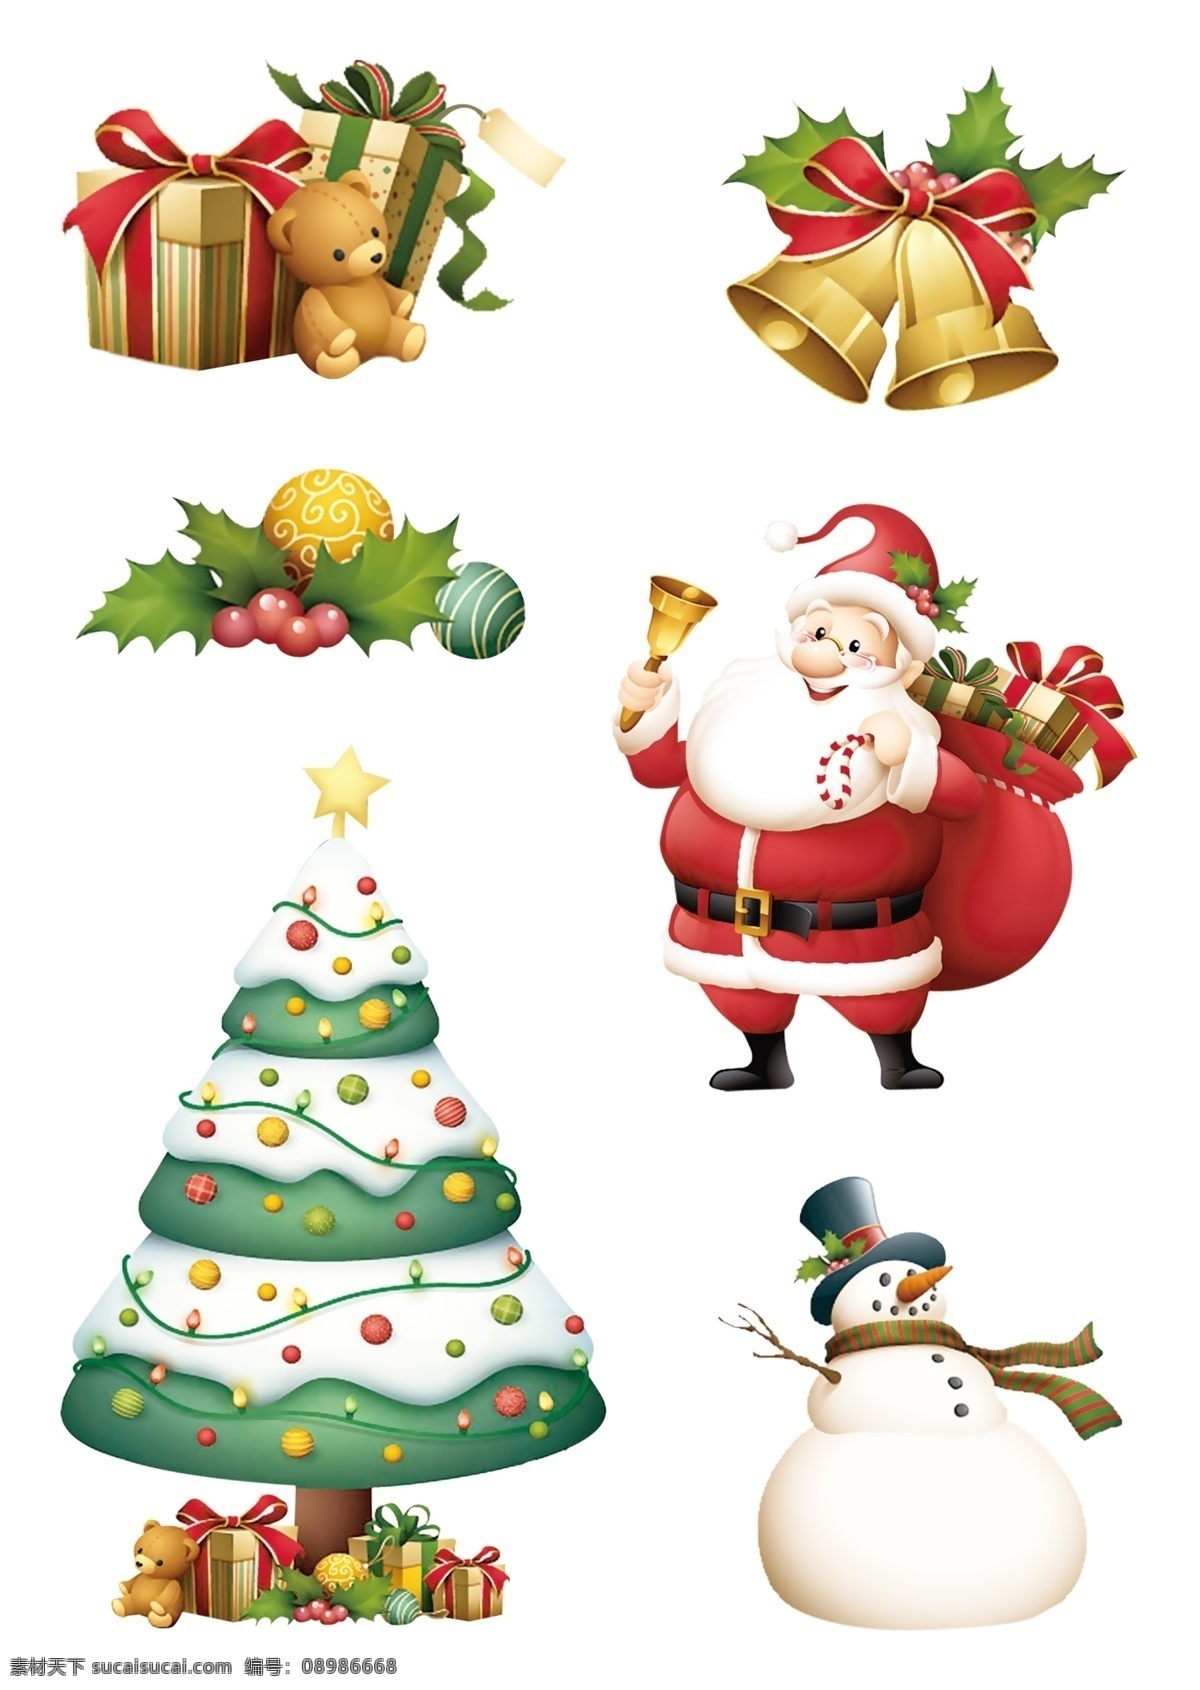 圣诞老人 圣诞节 圣诞 老人 白胡子 圣诞帽 红帽 红鼻子 圣诞元素 矢量素材 圣诞纹理 纹理 动漫动画 动漫人物